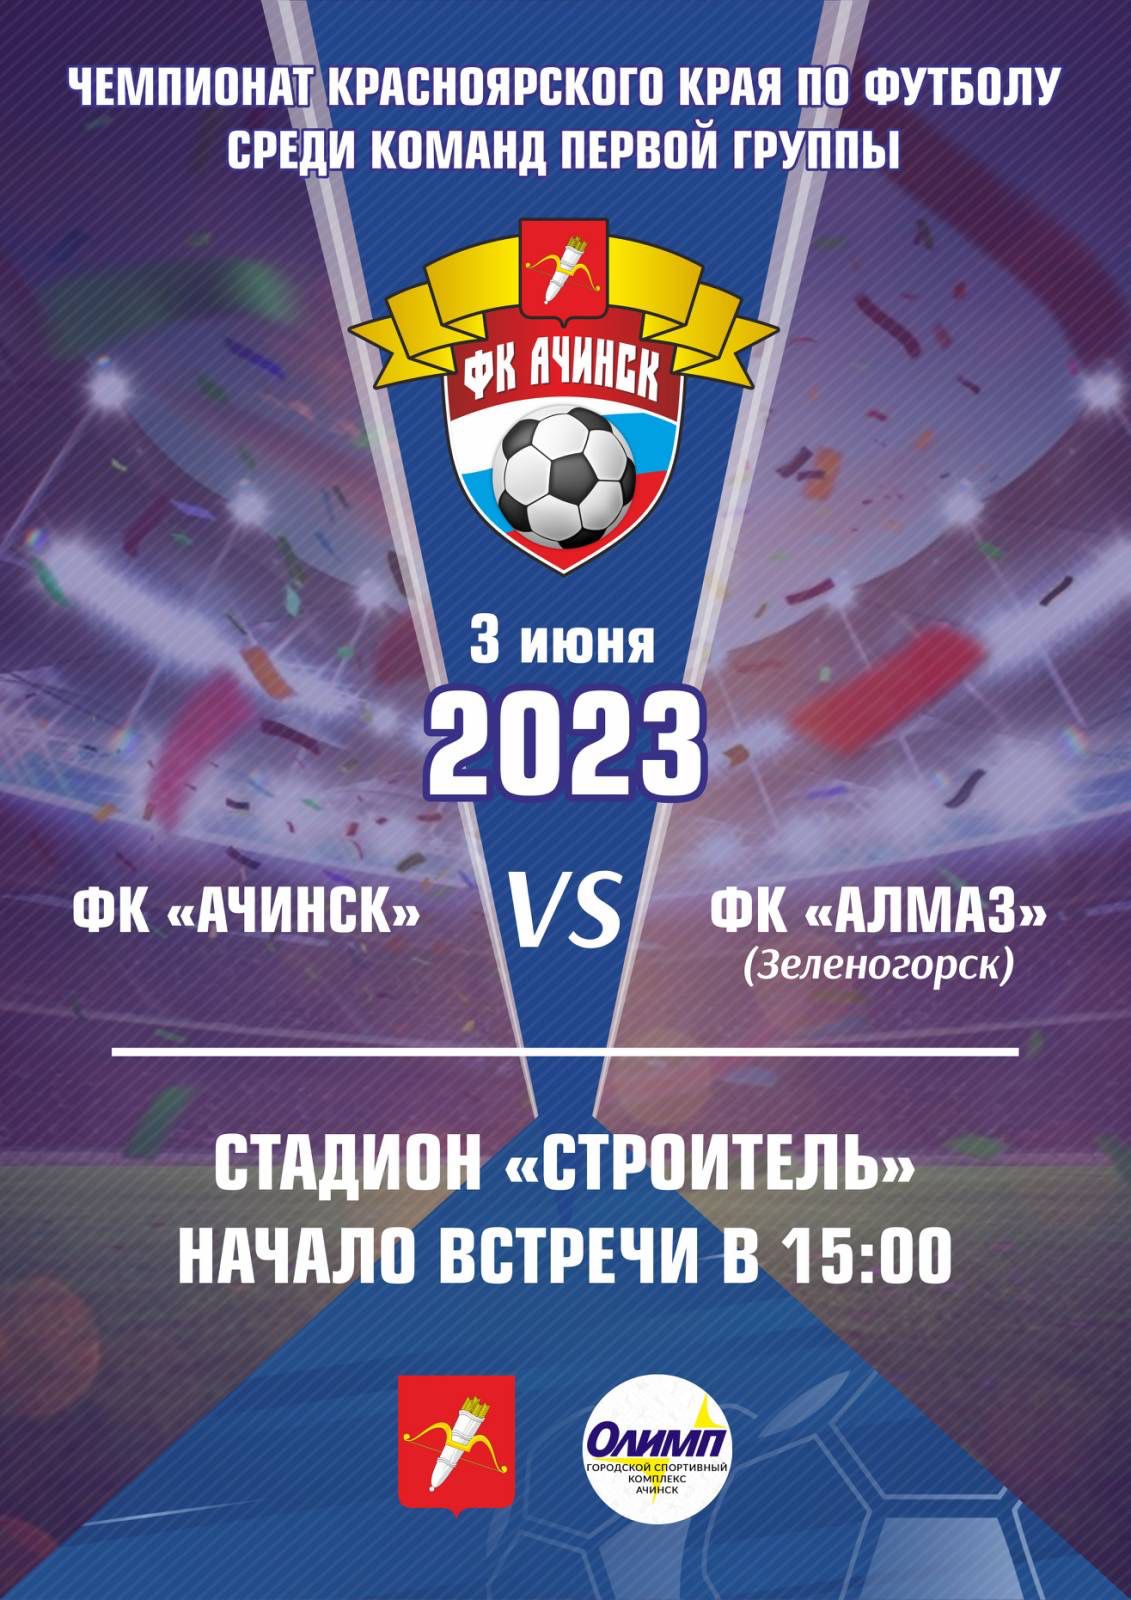 Чемпионат Красноярского края по футболу среди команд первой группы 2023 года.